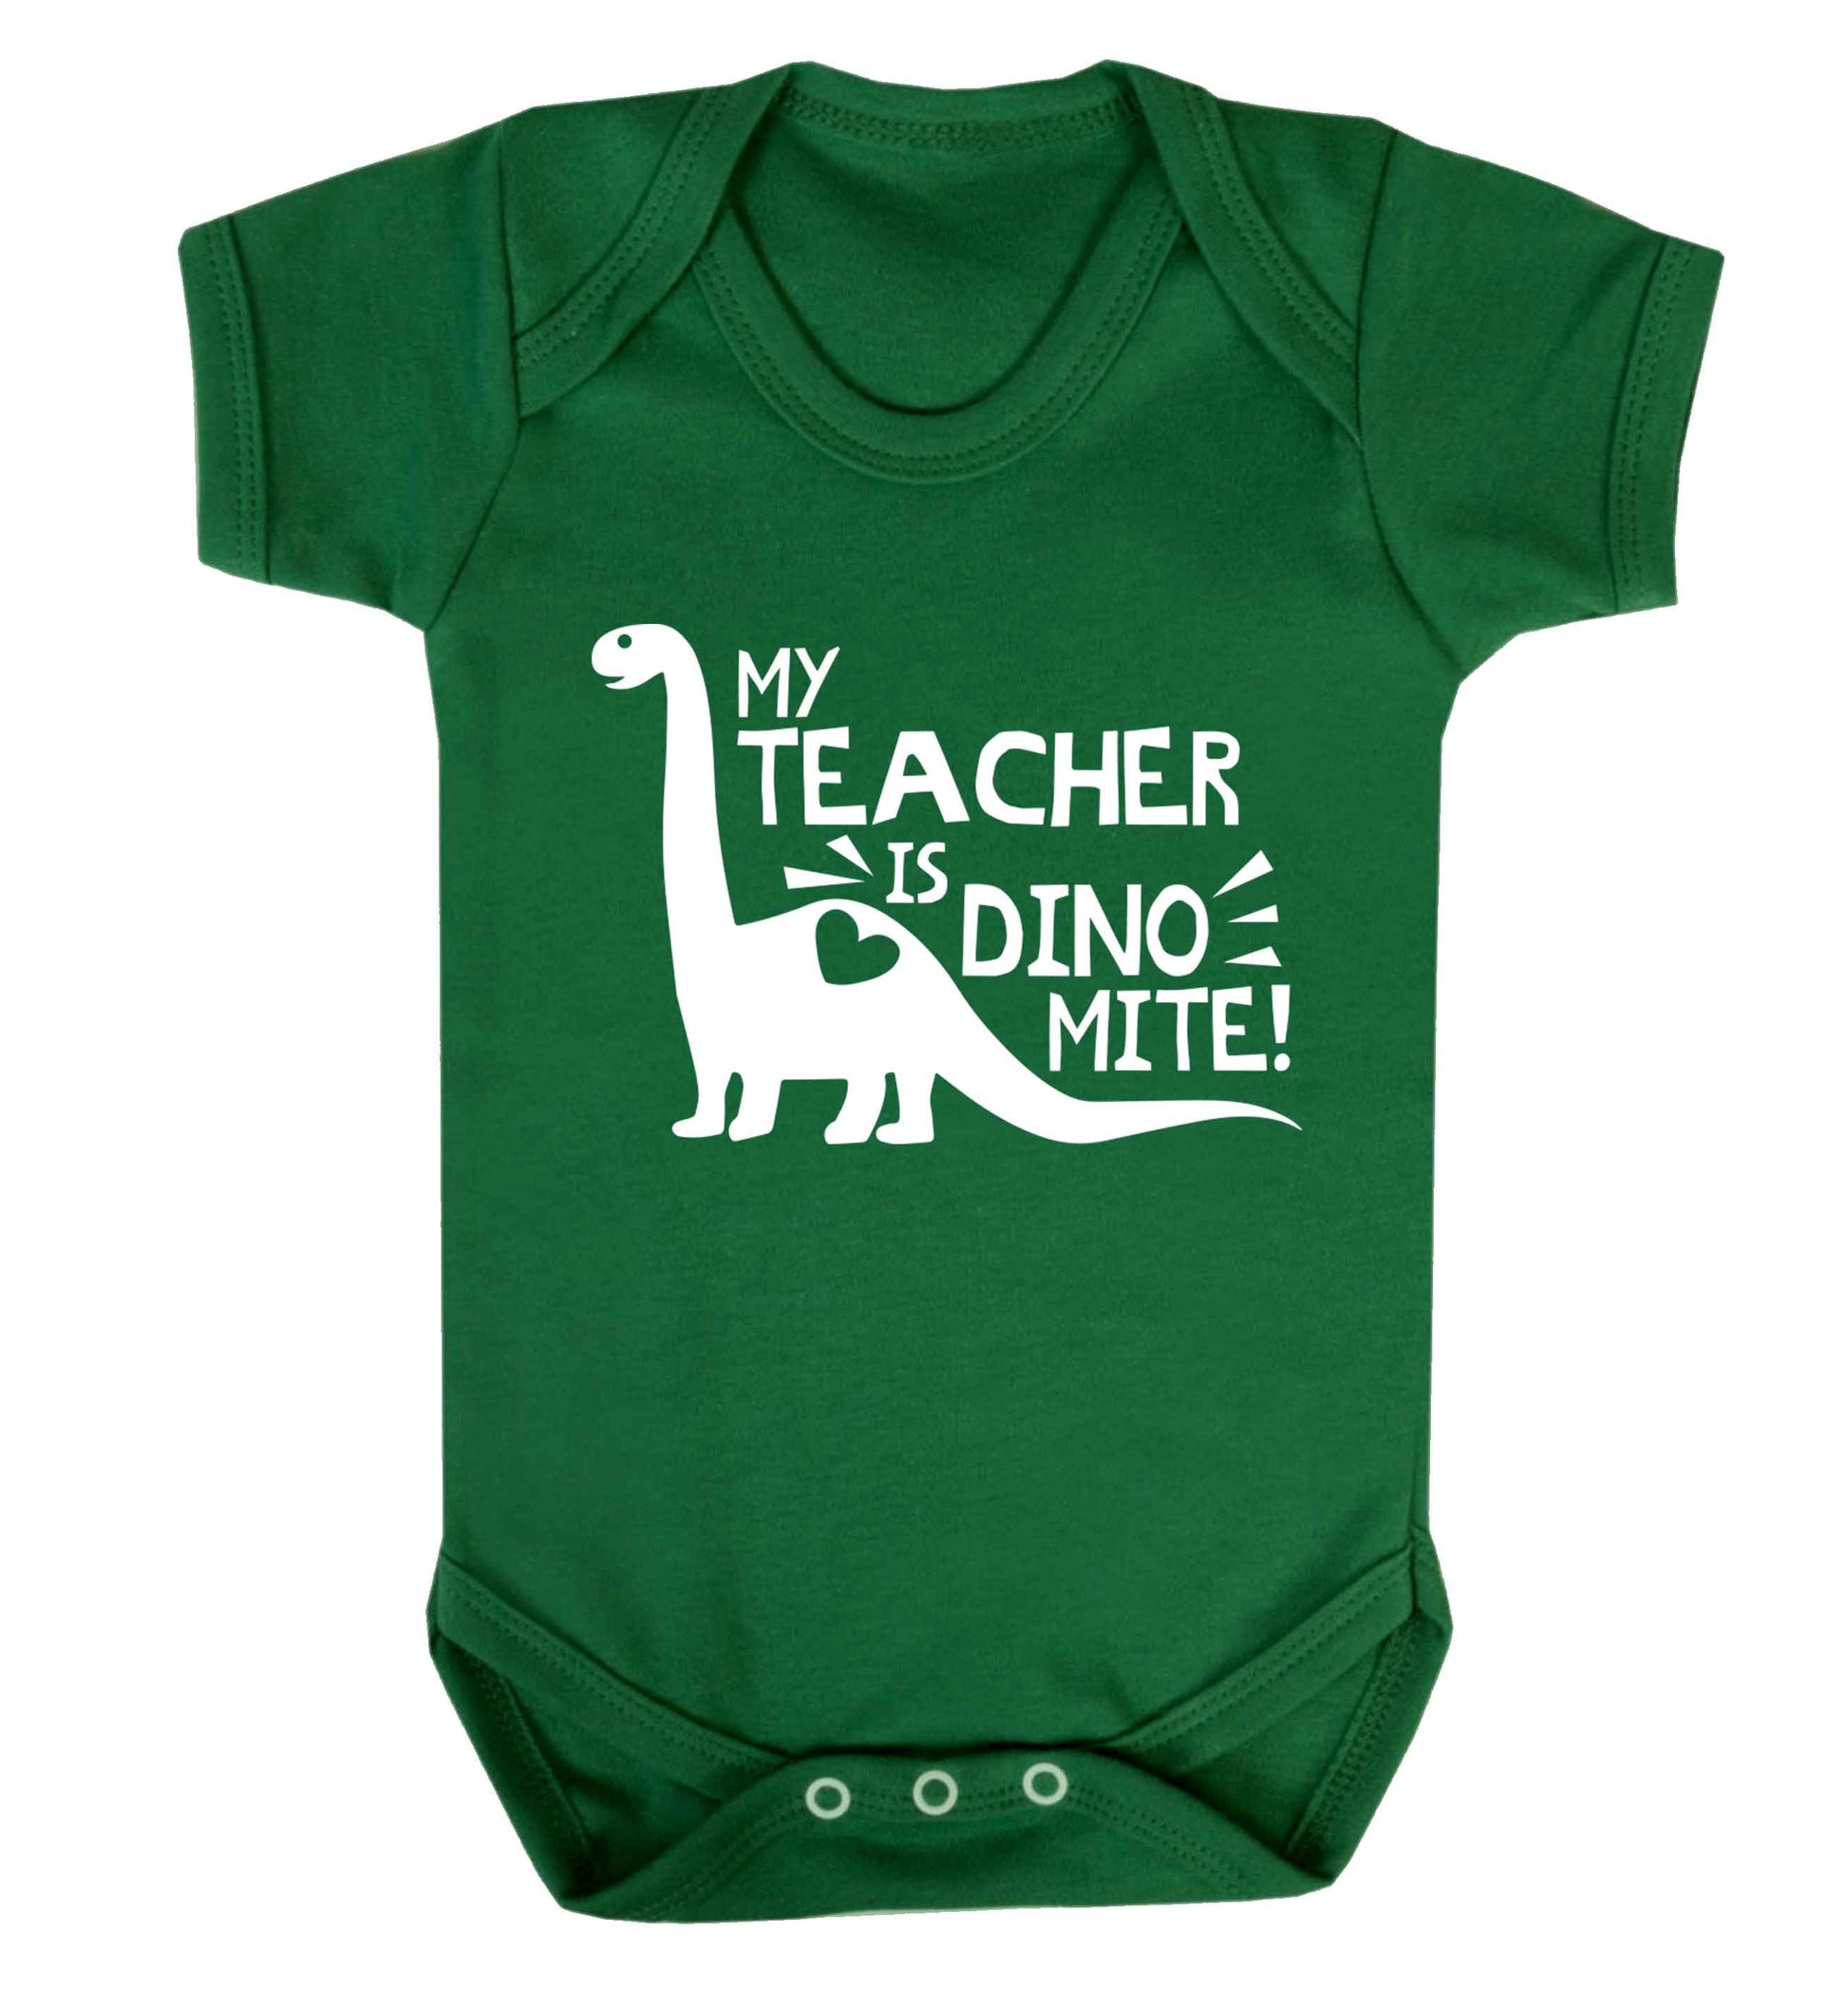 My teacher is dinomite! Baby Vest green 18-24 months